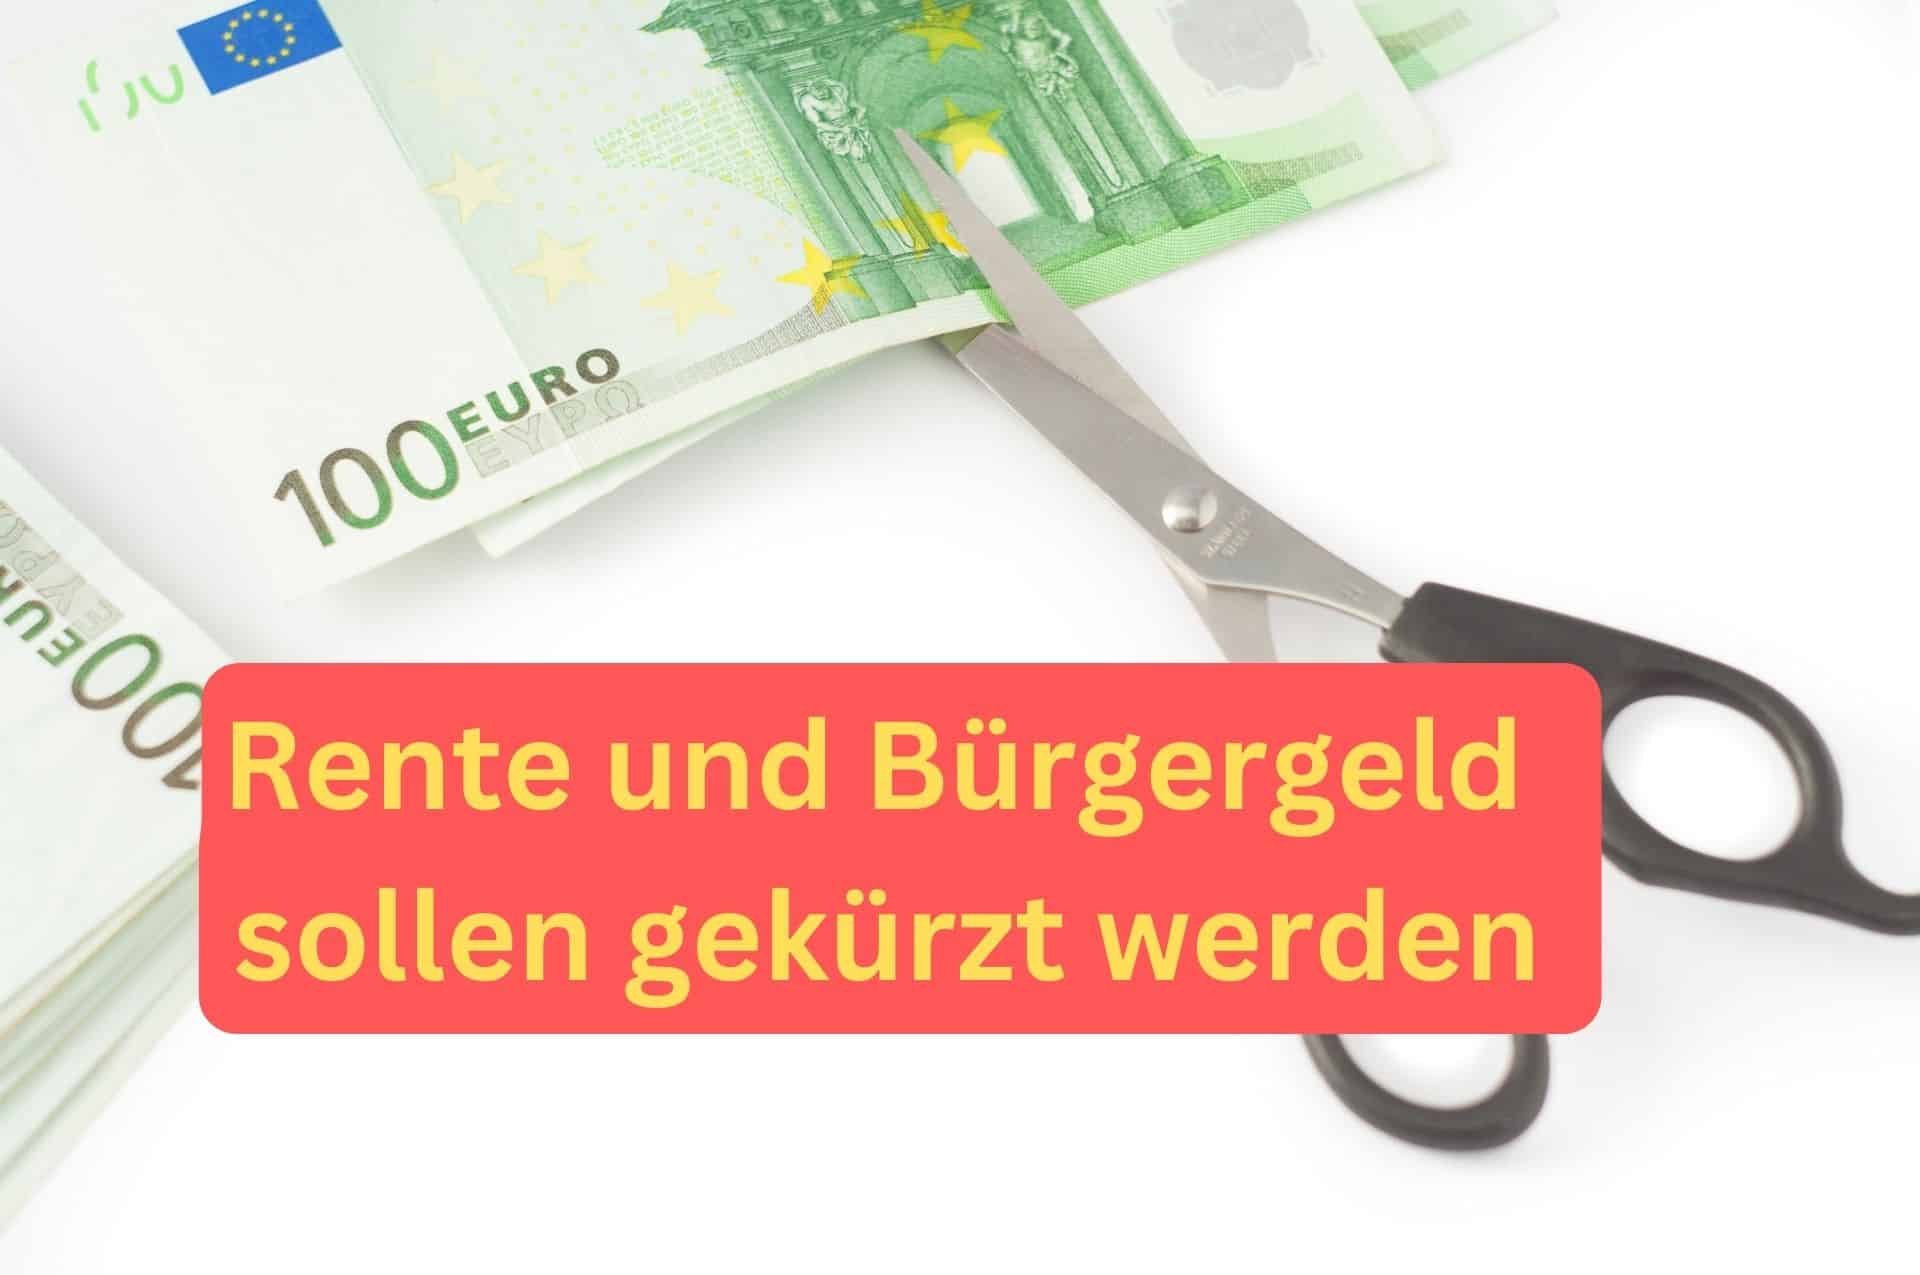 Nach willen der FDP sollen Rente und Bürgergeld gekürzt werden.